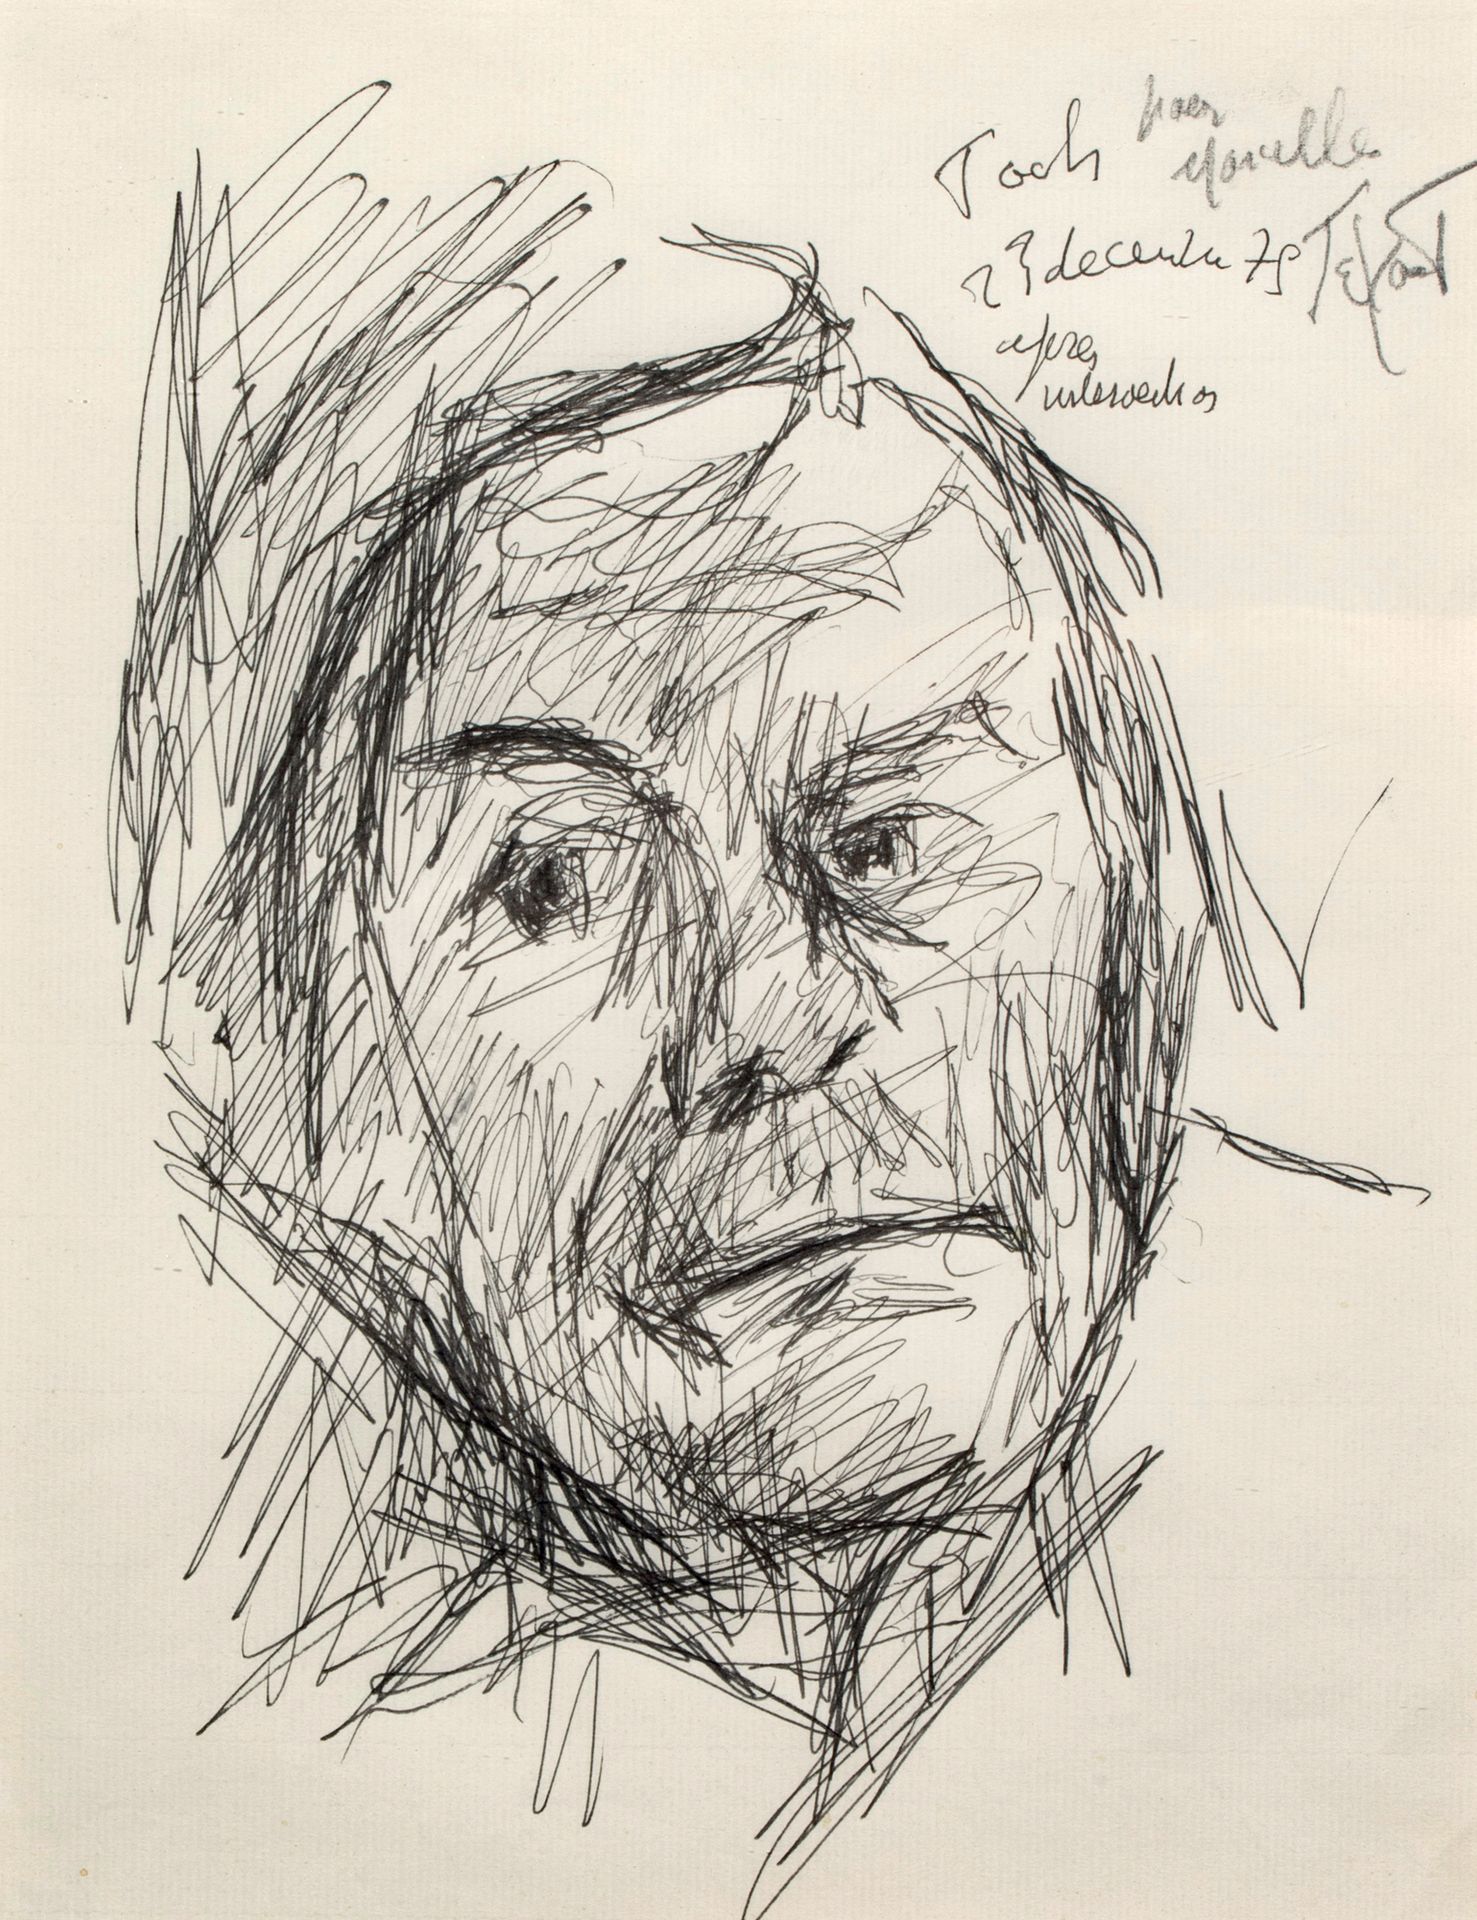 Pierre TAL COAT( 1905-1985) 
Autoportrait à l'hôpital Foch, 23 Décembre 1975



&hellip;